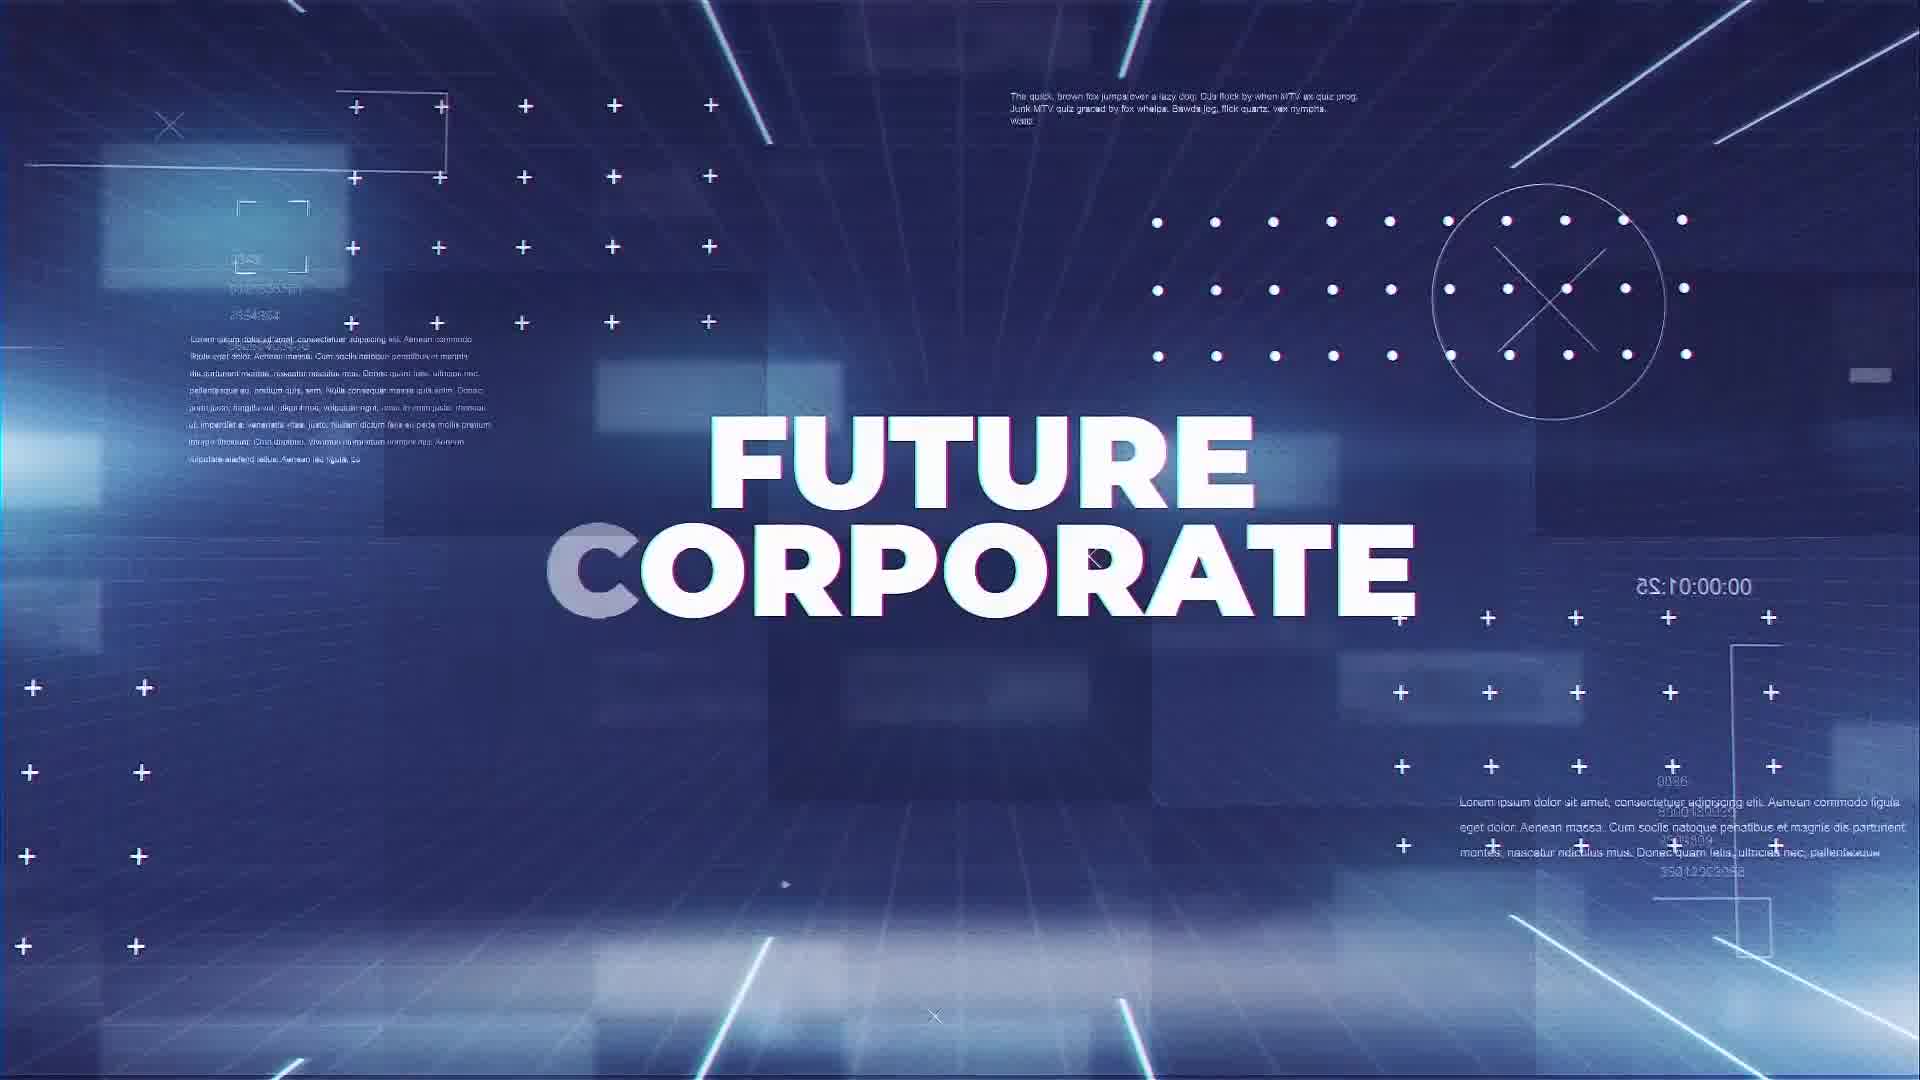 Future Corporate - Download Videohive 23233858